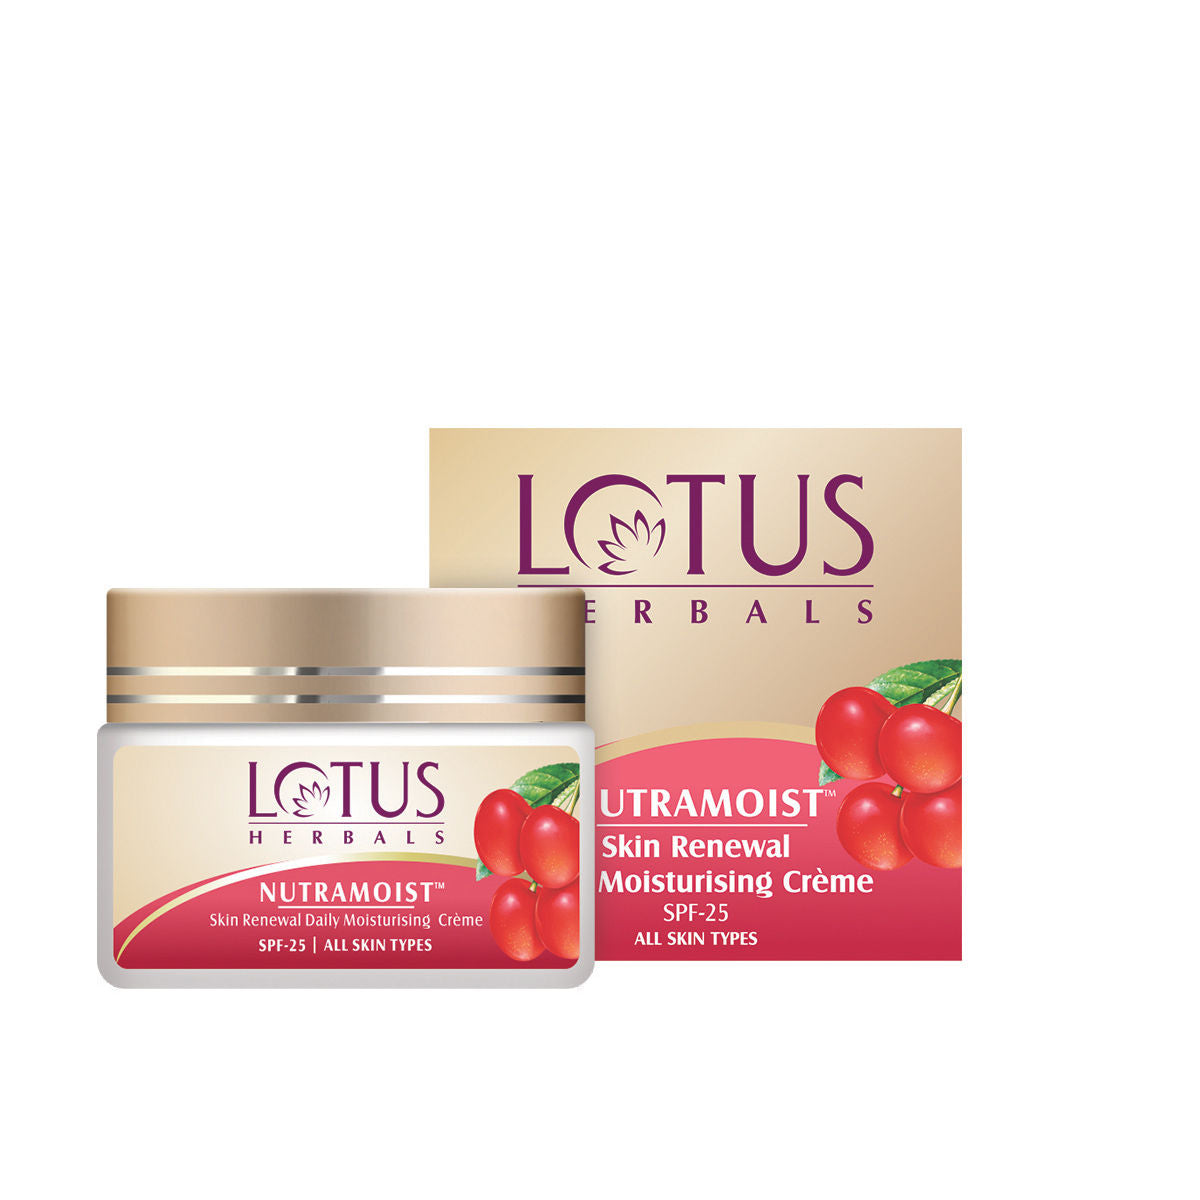 Lotus Herbal Nutramoist Skin Renewal Daily Moisturising Creme SPF-25 (50 g) Lotus Herbals